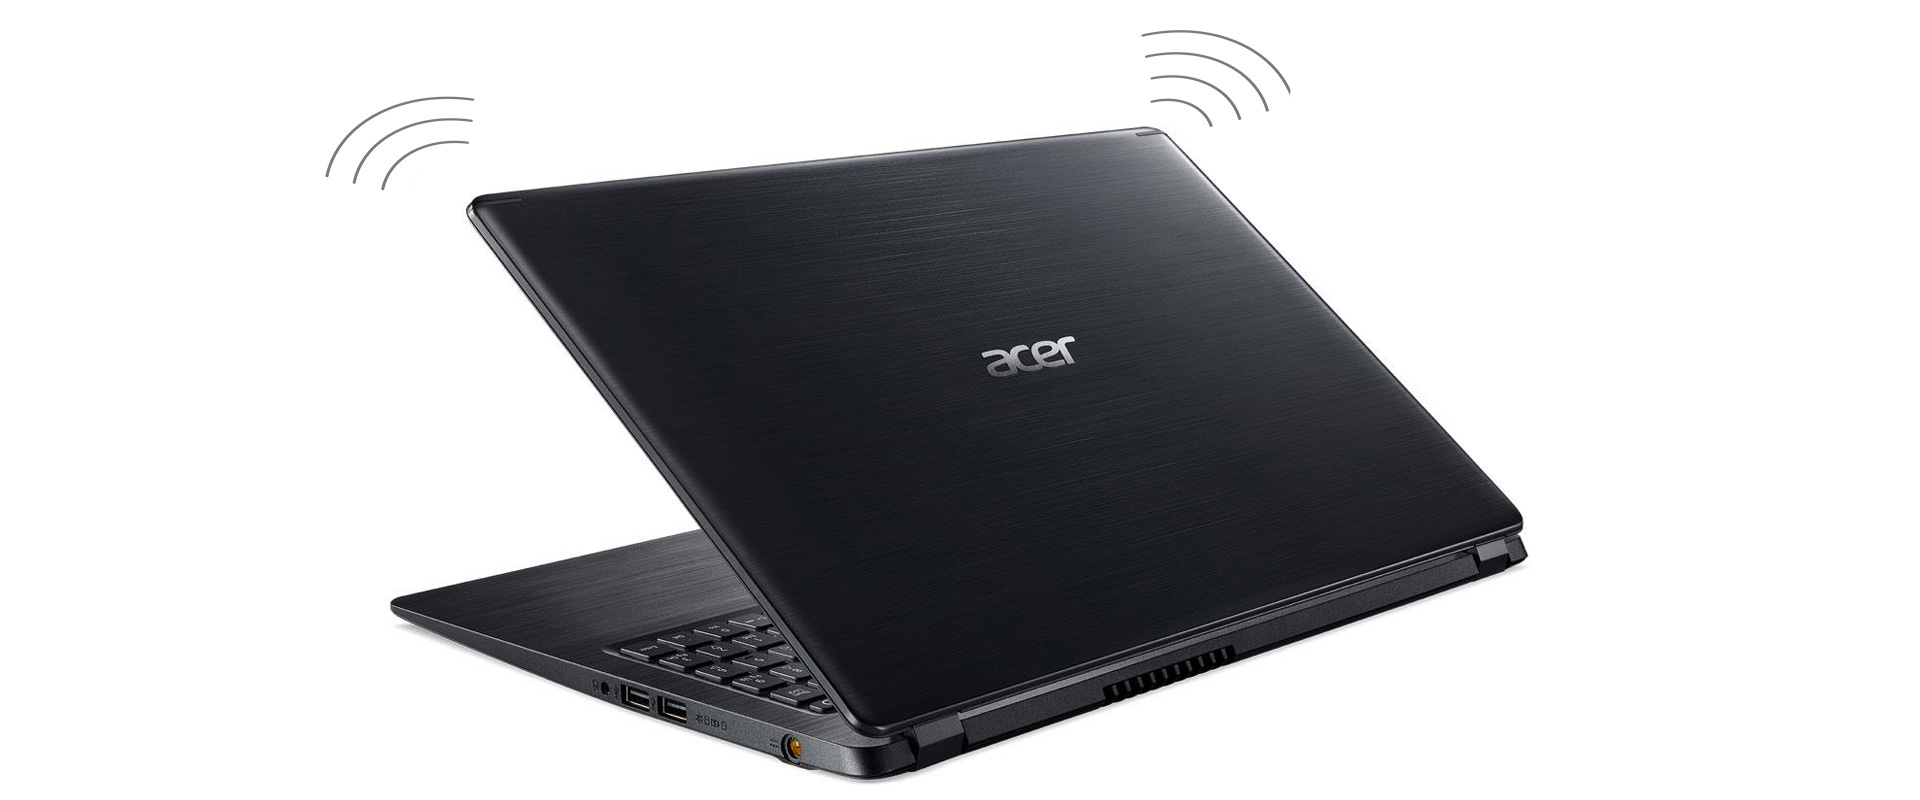 Laptop Acer Aspire 5 bezprzewodowa wygoda wiFi technologia